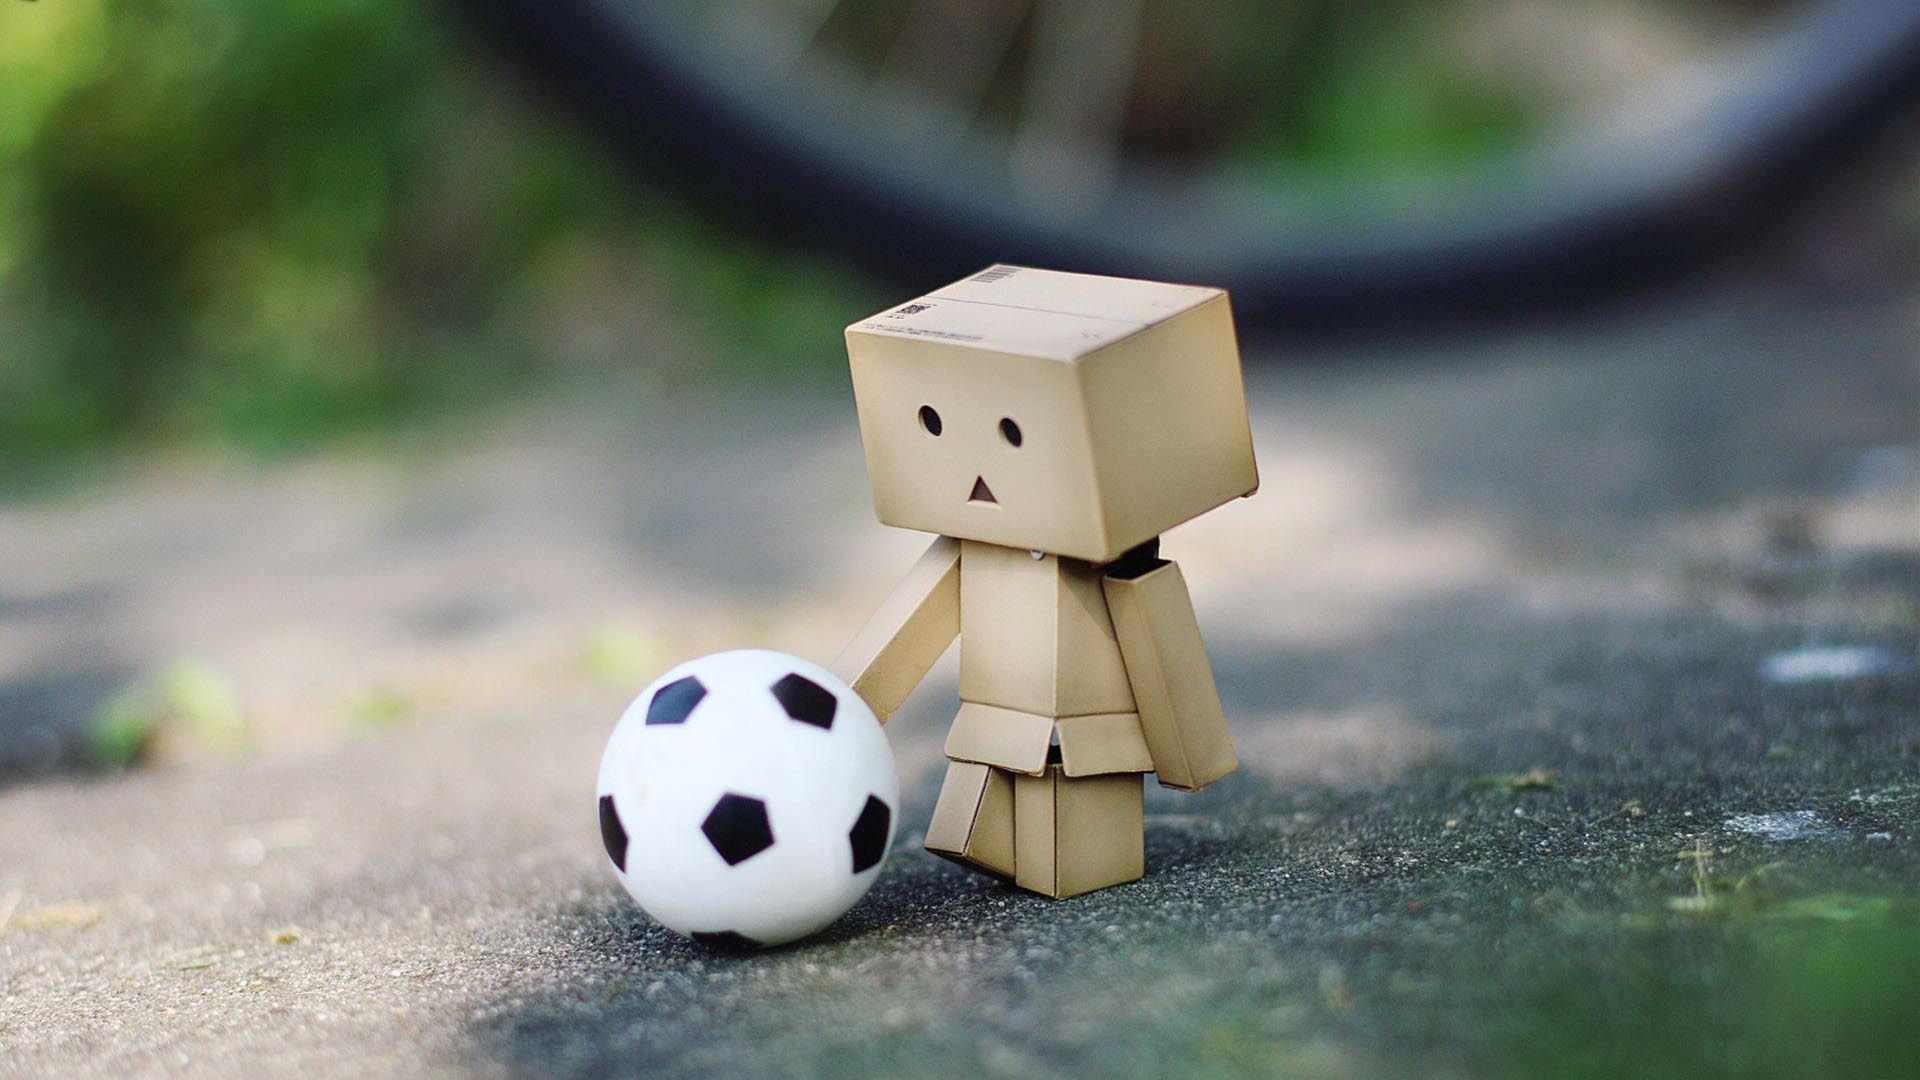 Con el dispositivo se puede disfrutar del futbol y la robótica a través de un control remoto